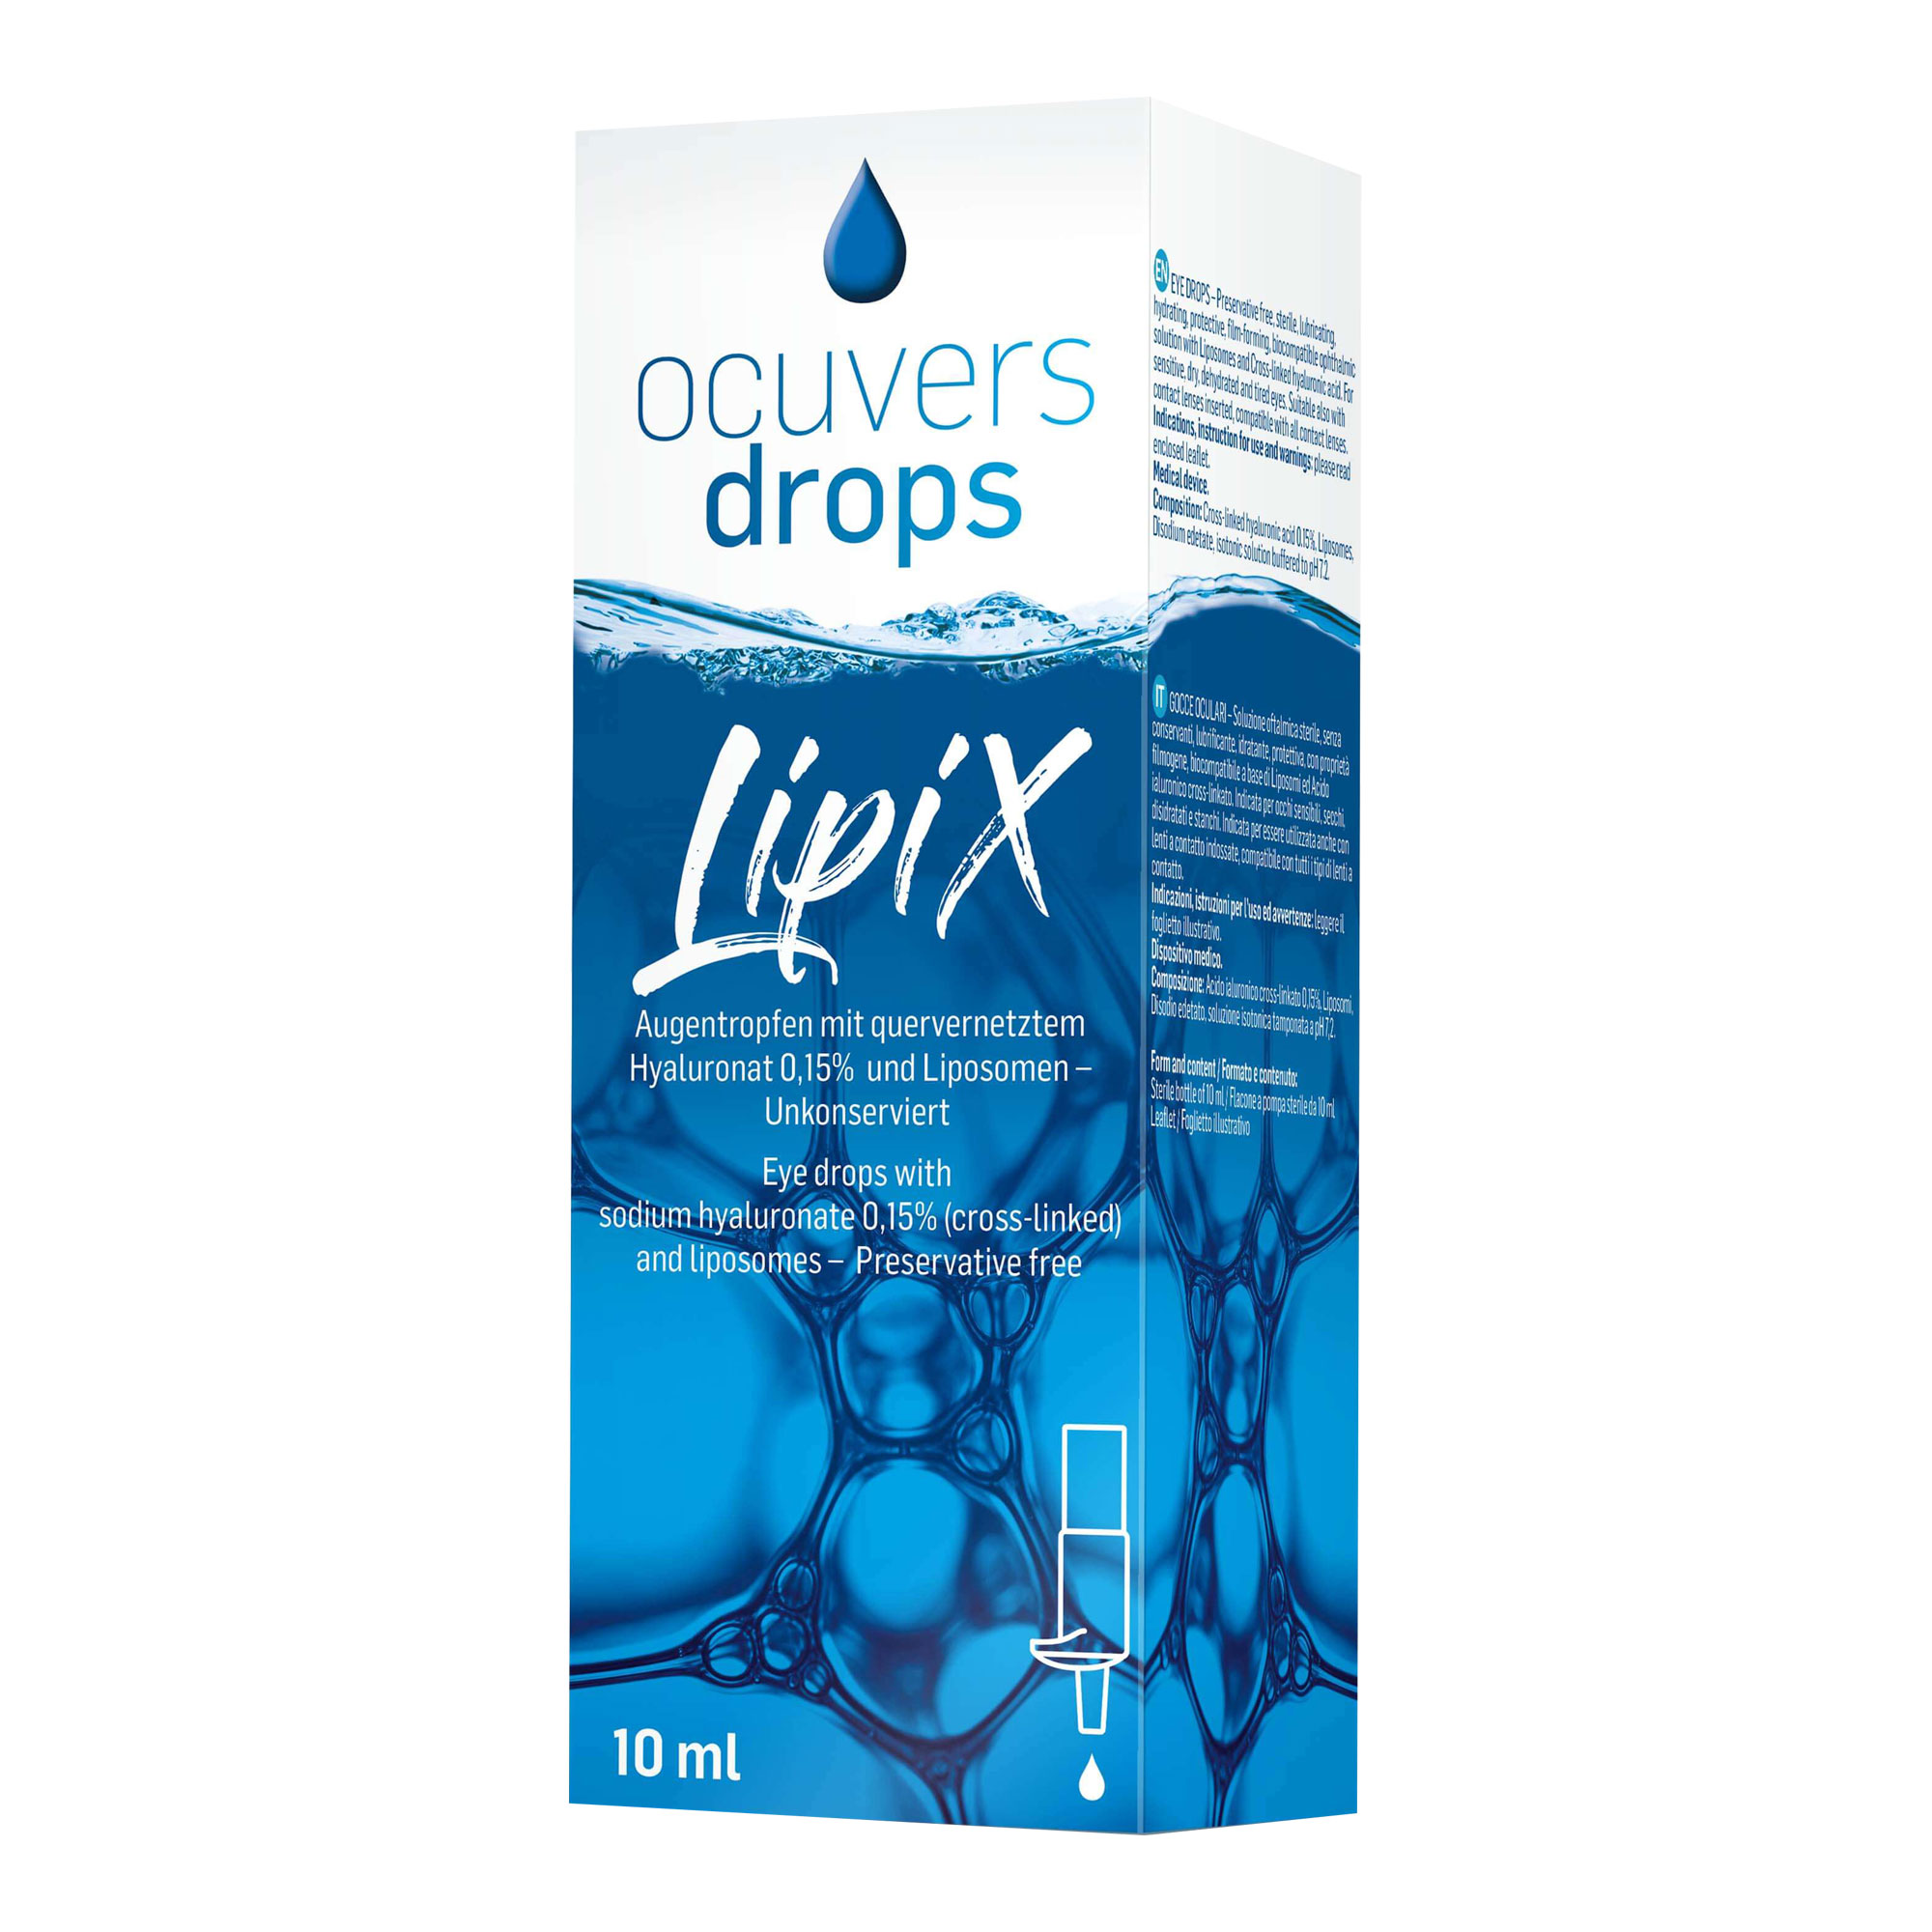 Ocuvers drops LipiX Augentropfen